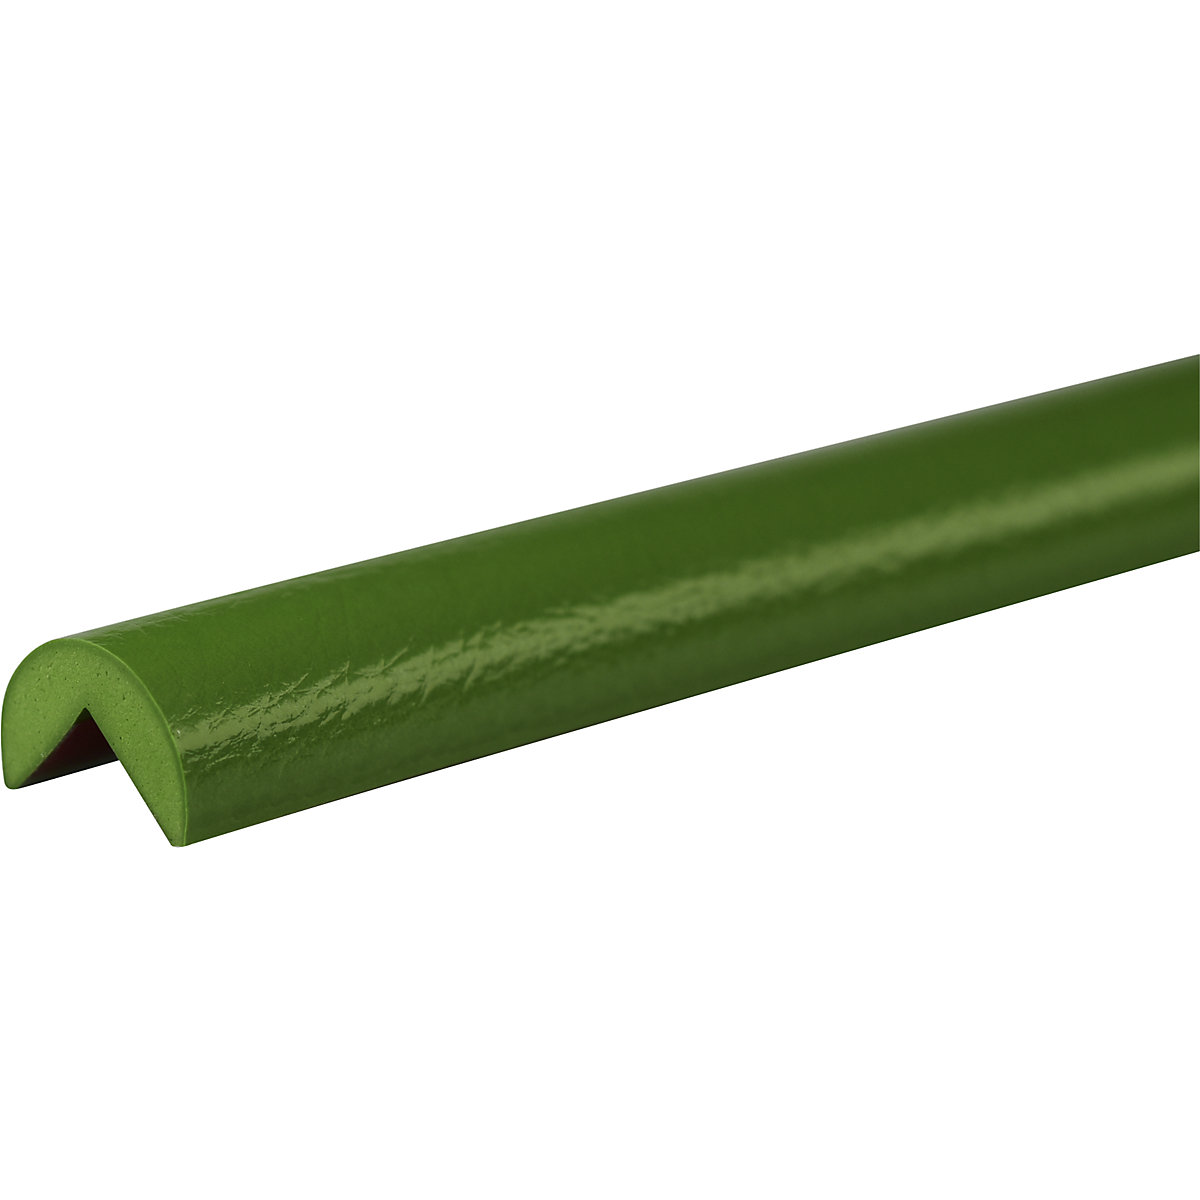 Knuffi®-hoekbescherming – SHG, type A, stuk van 1 m, groen-21